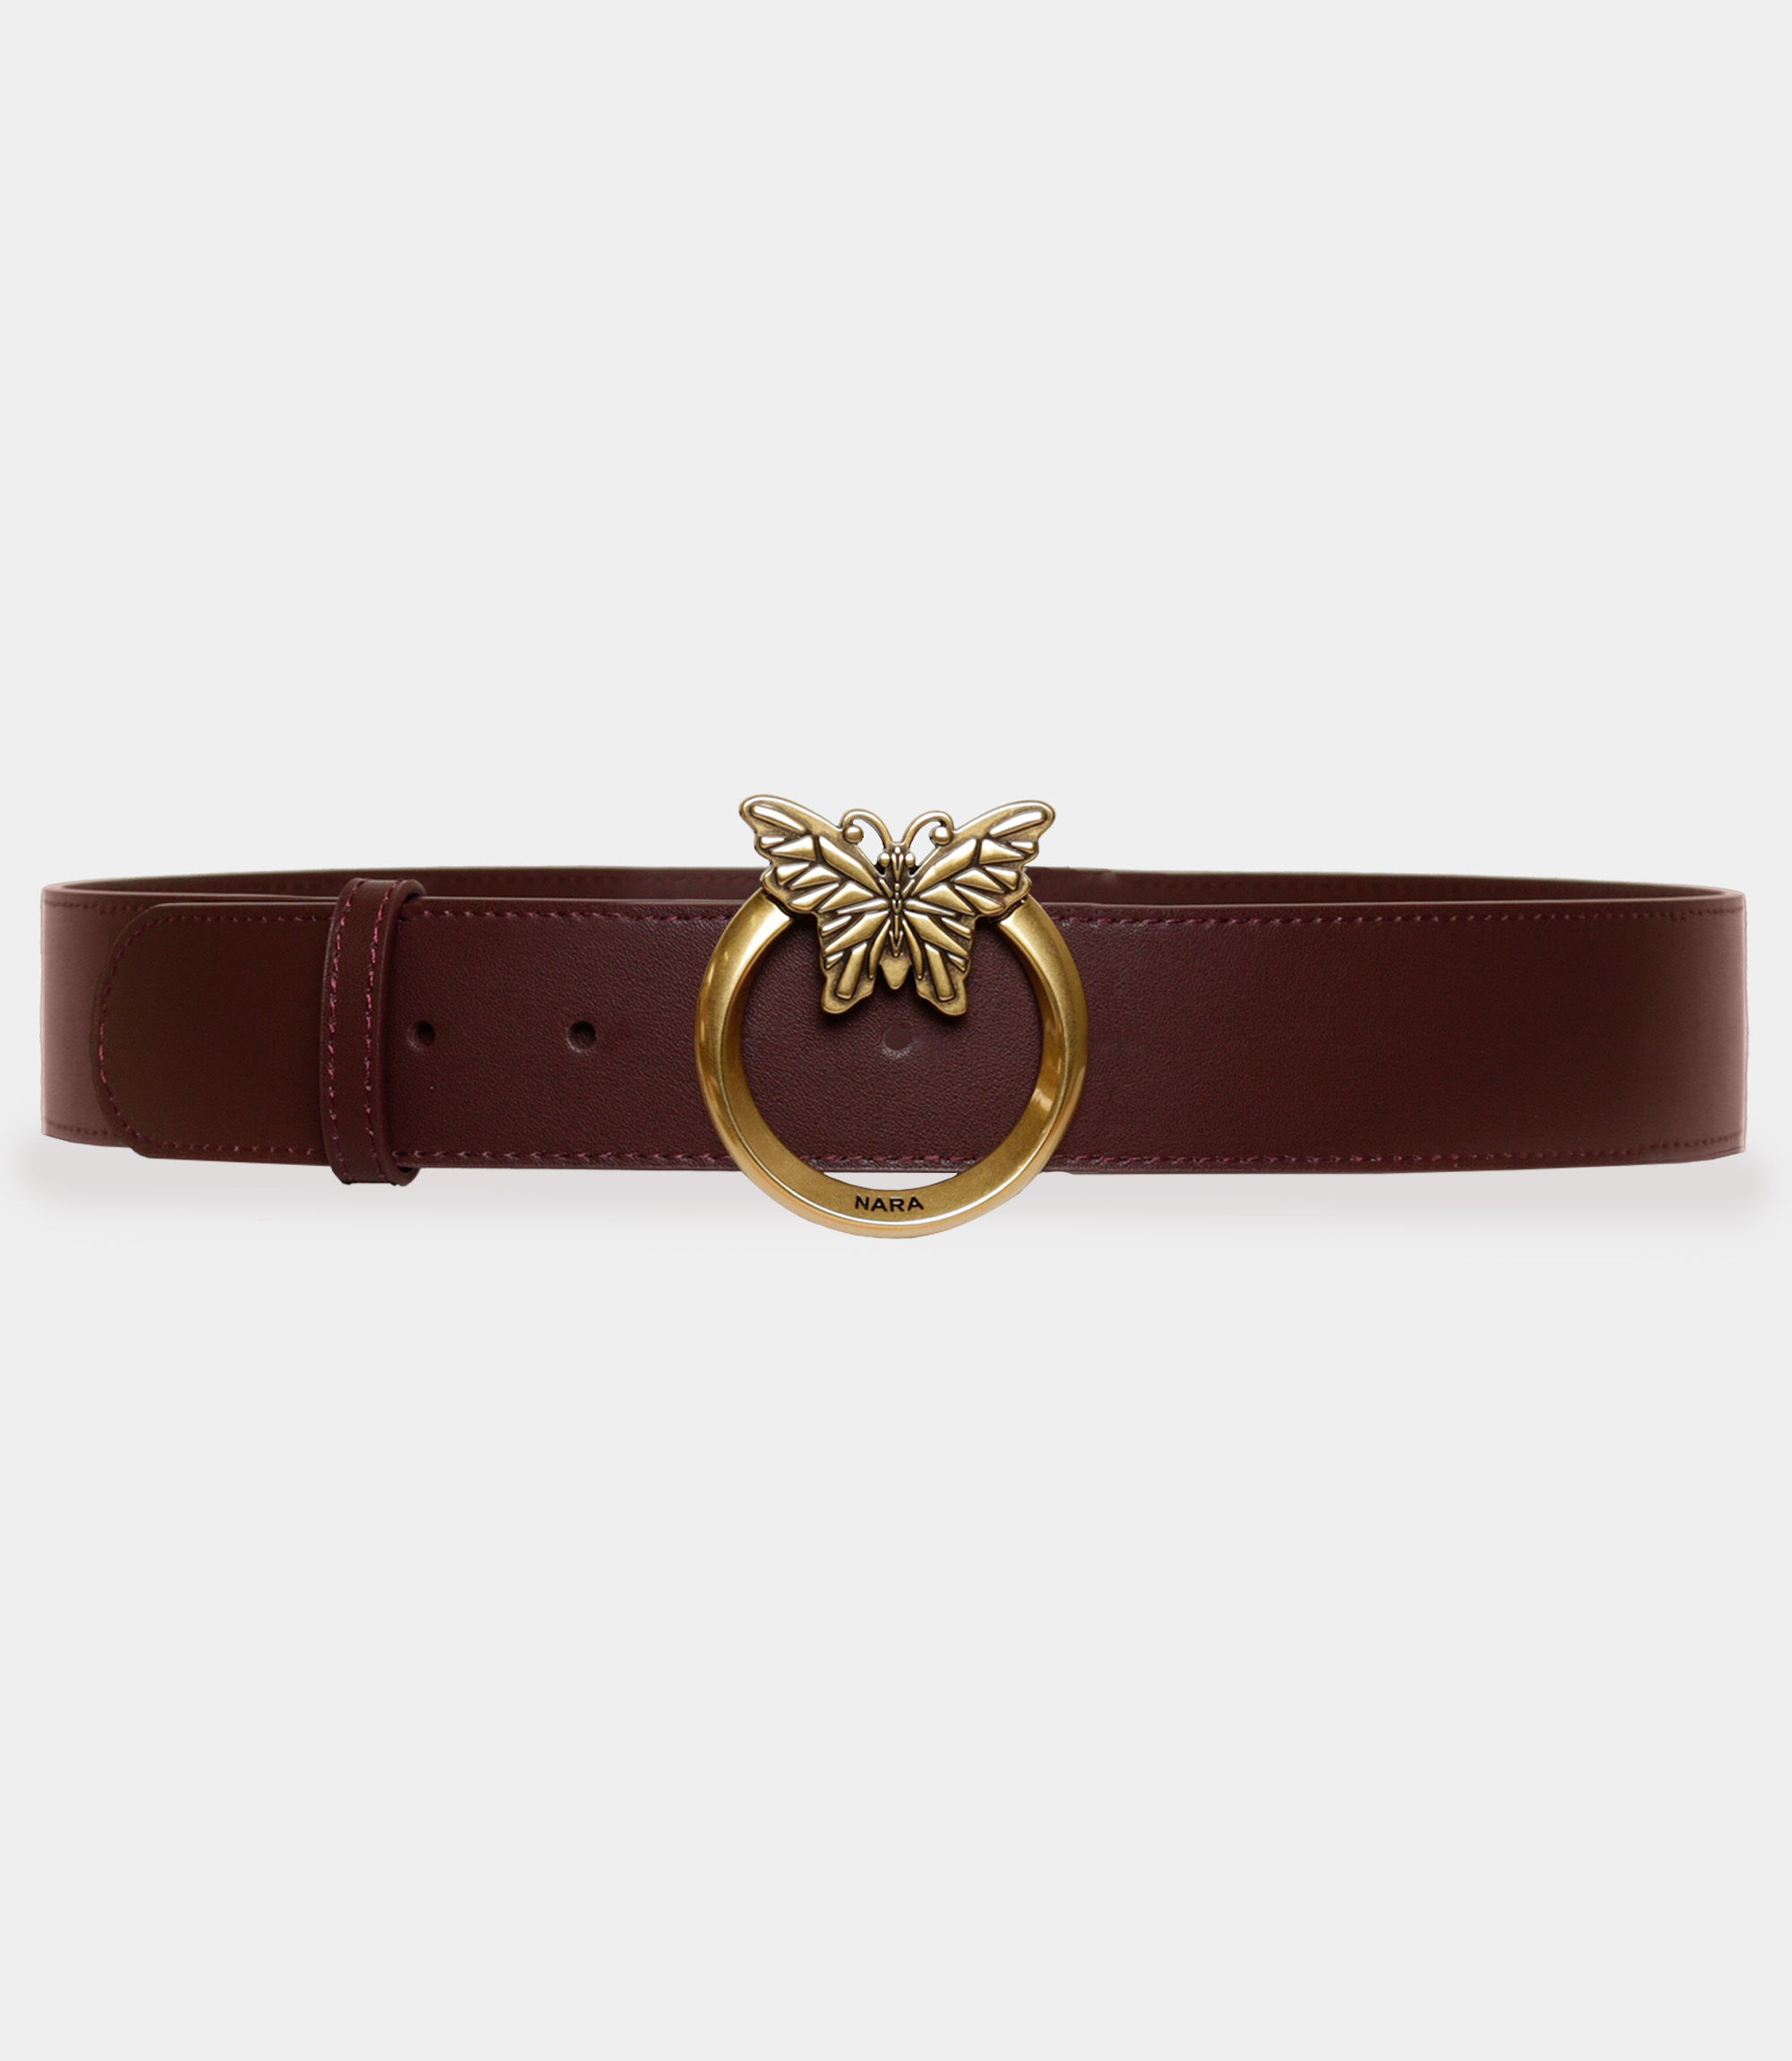 Leather belt with Nara logo - Brown - NaraMilano